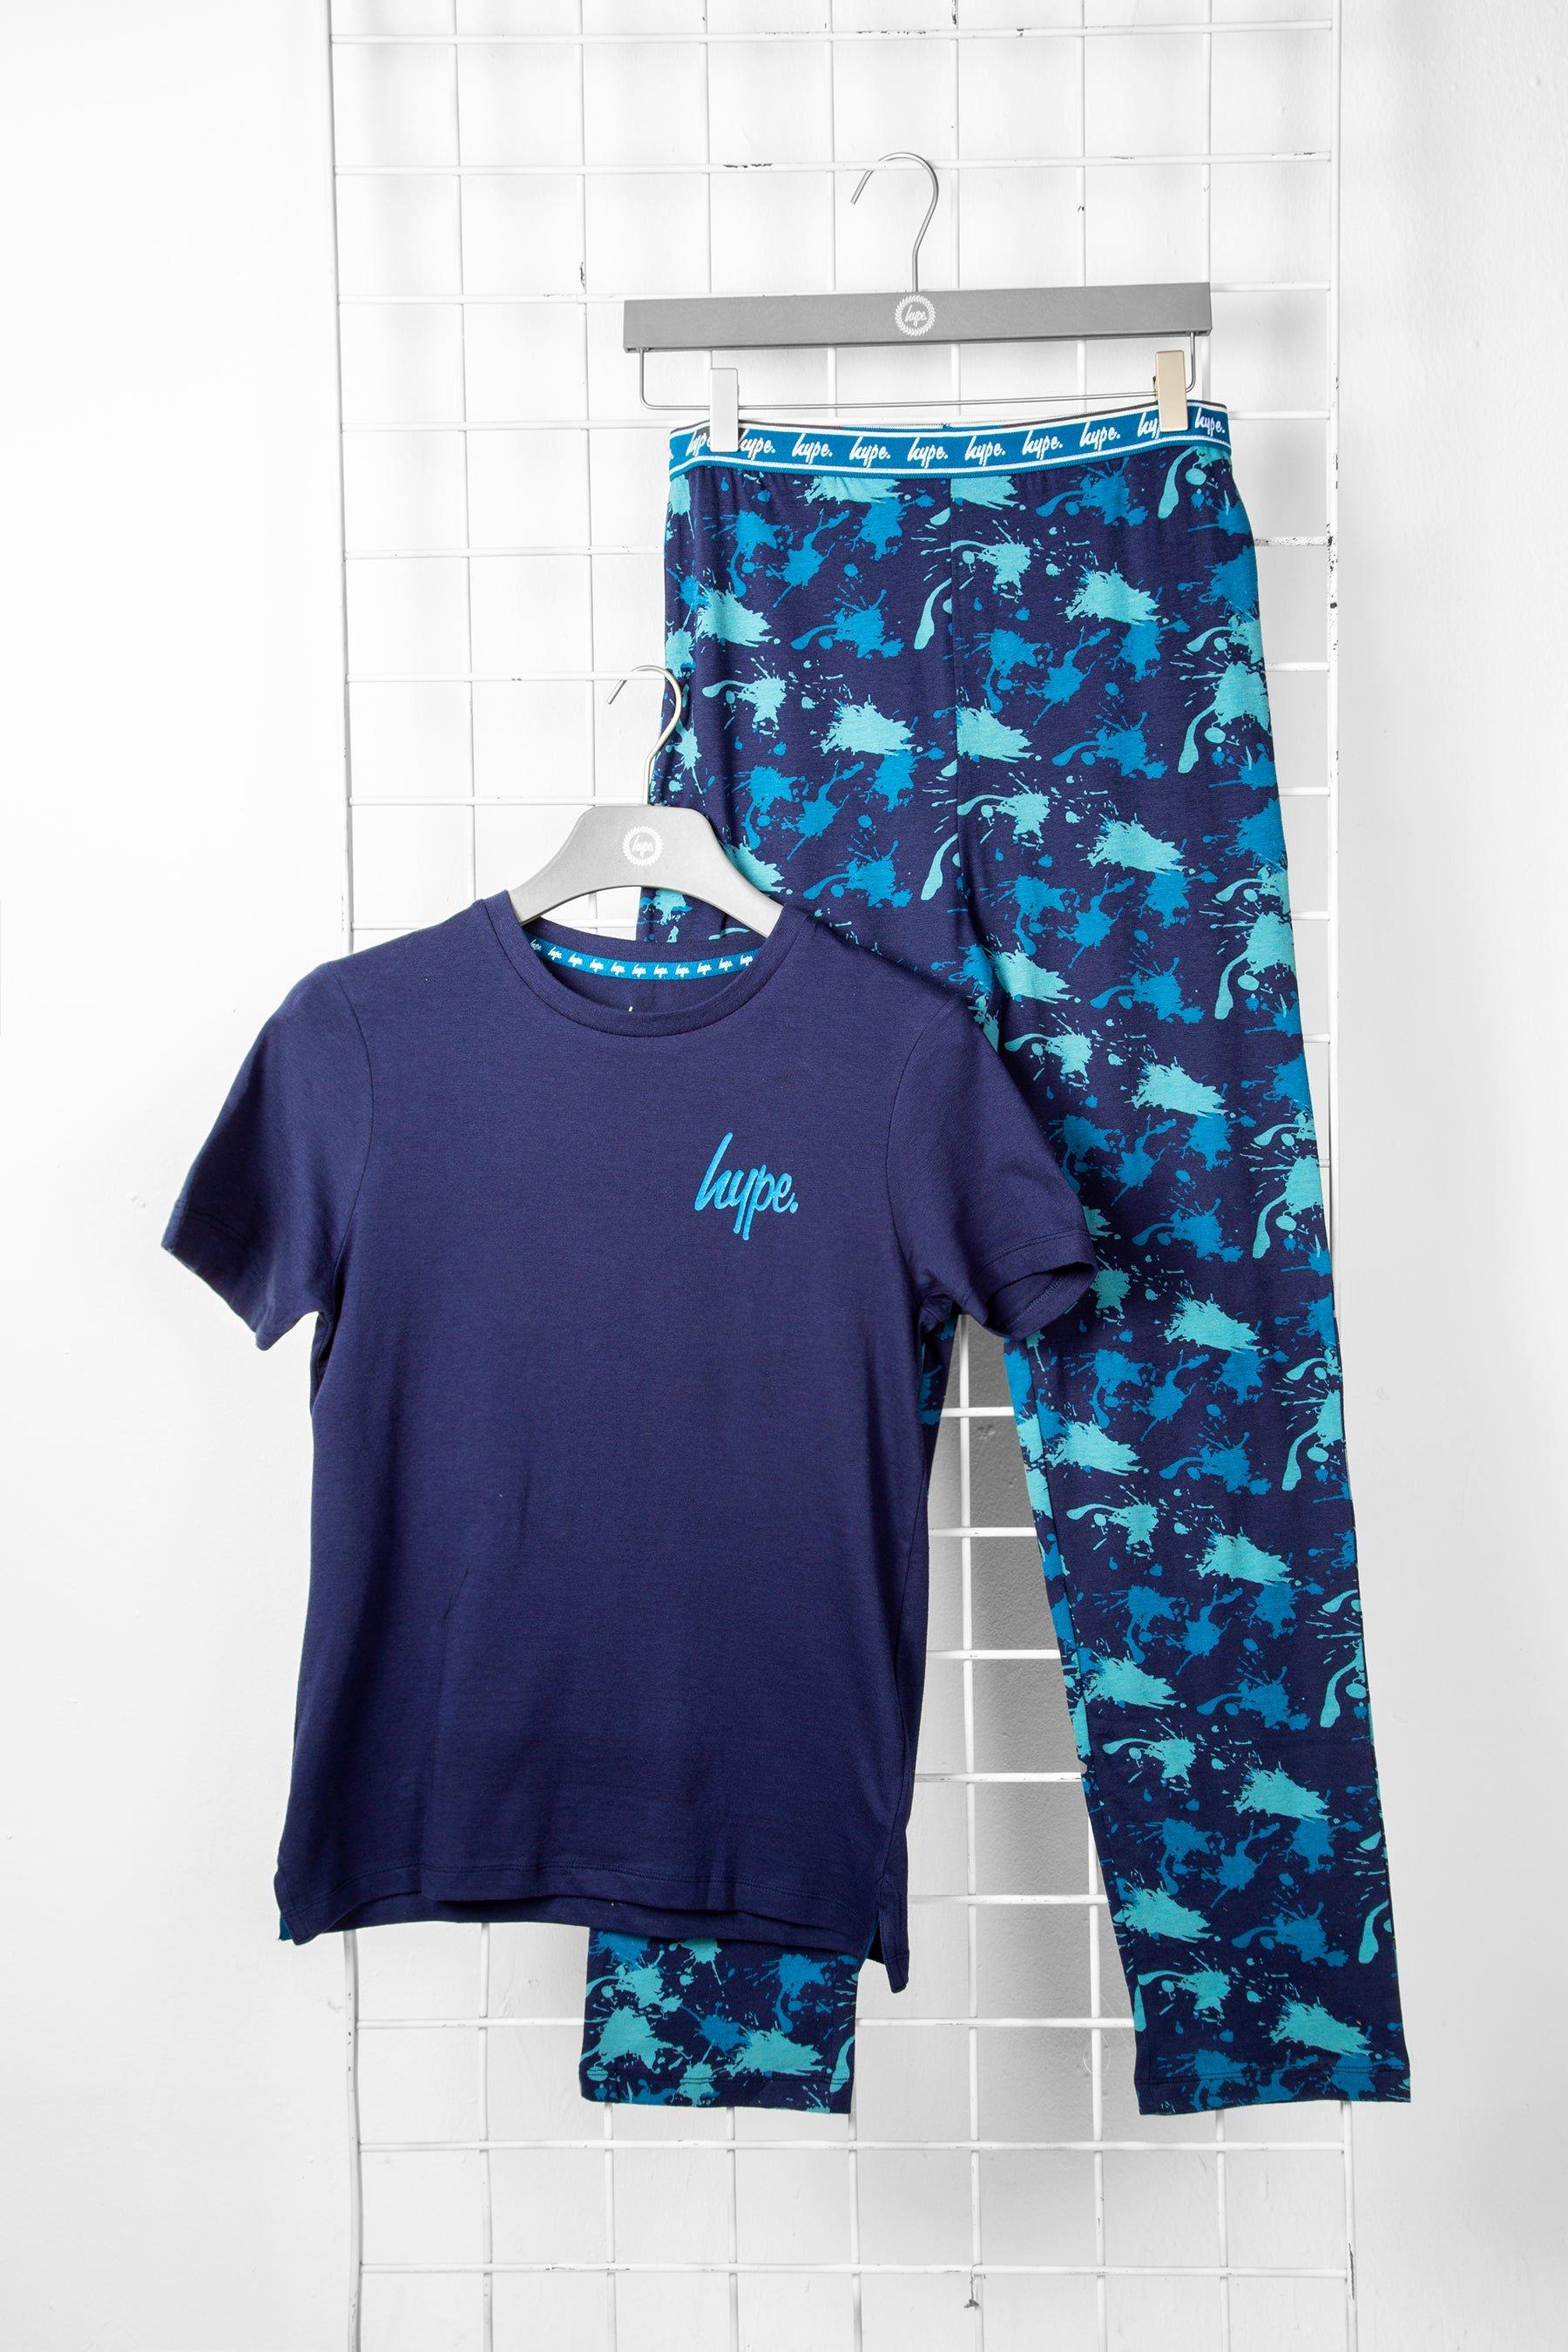 1 комплект футболок и пижамы Hype, темно-синий